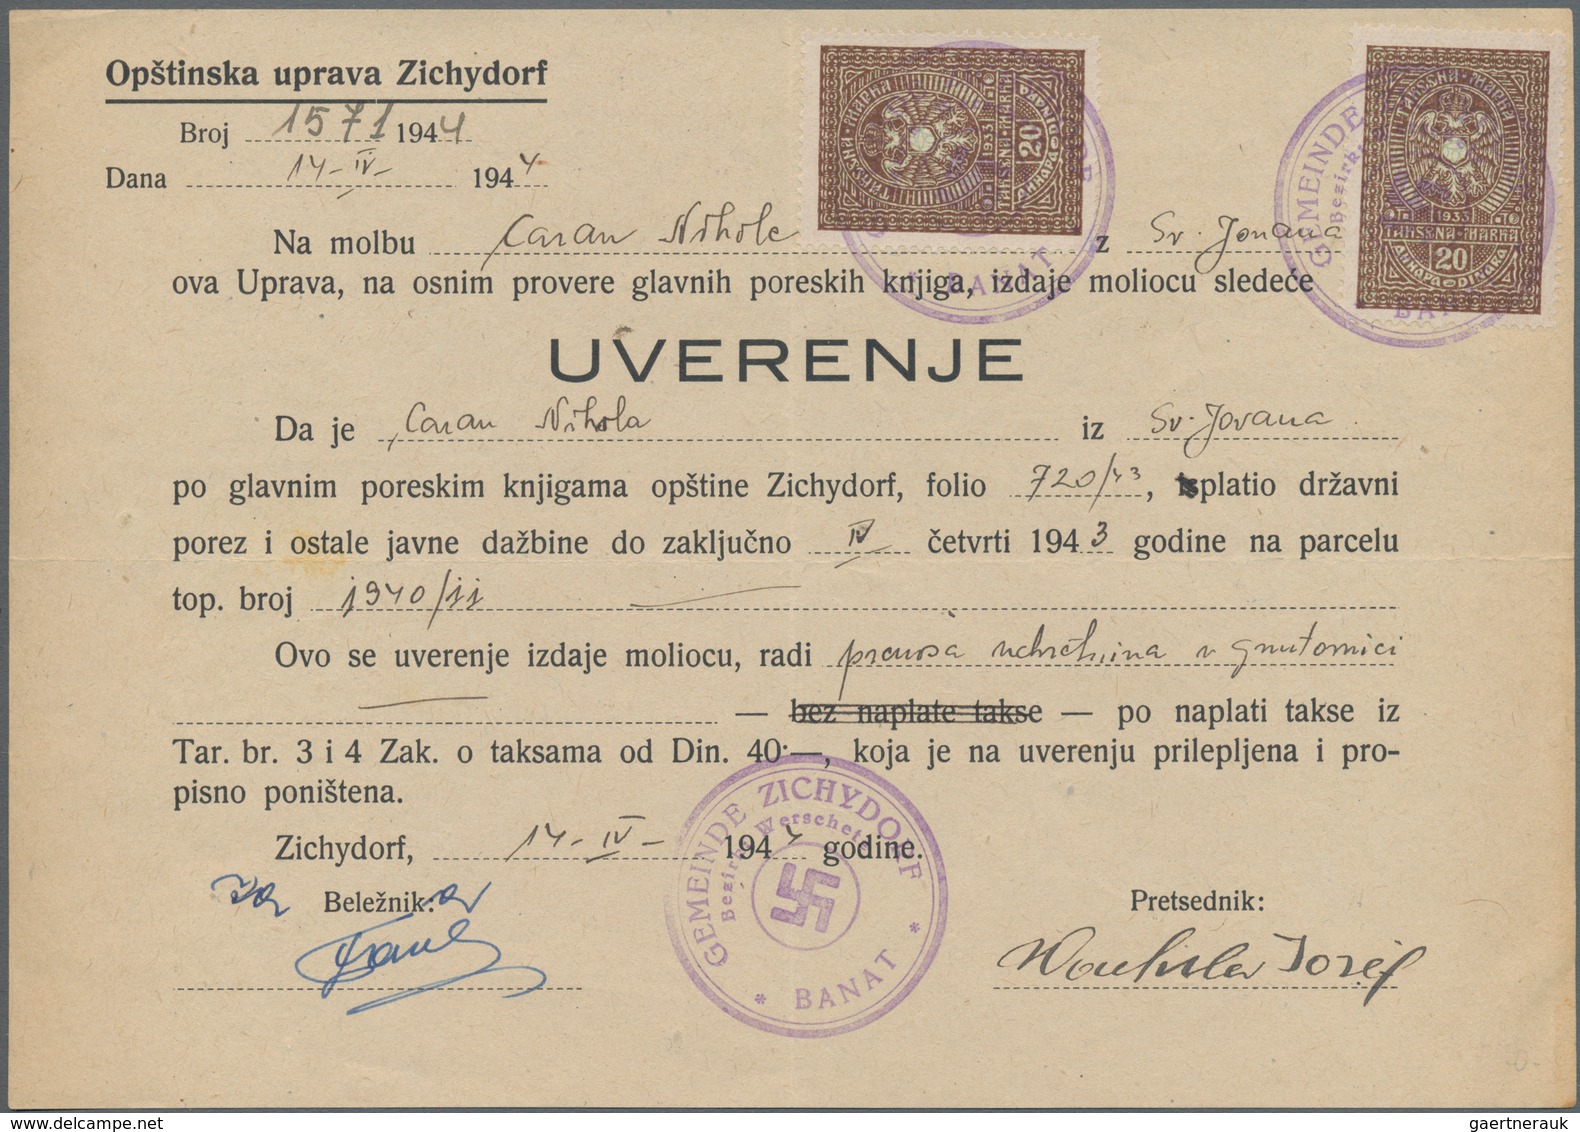 Serbien: 1865/1944 interessante Partie meist besserer Stücke, dabei Briefe, Ganzsachen, Einheiten un